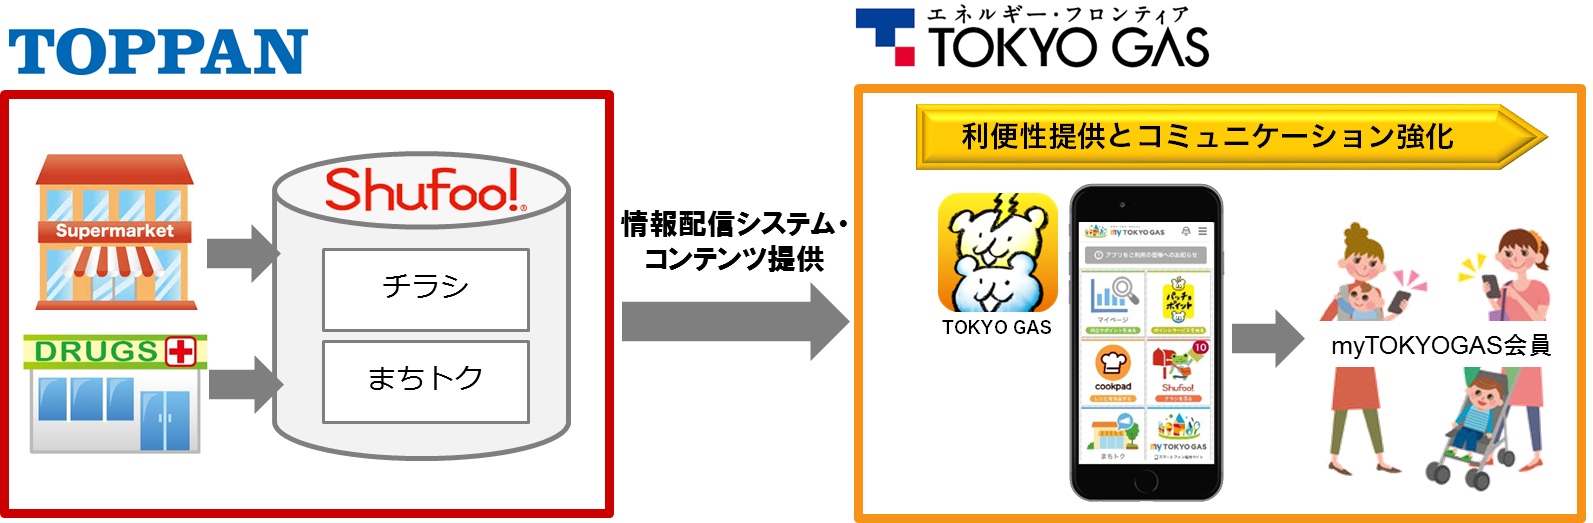 電子チラシサービス「Shufoo!」、東京ガスのアプリを開発